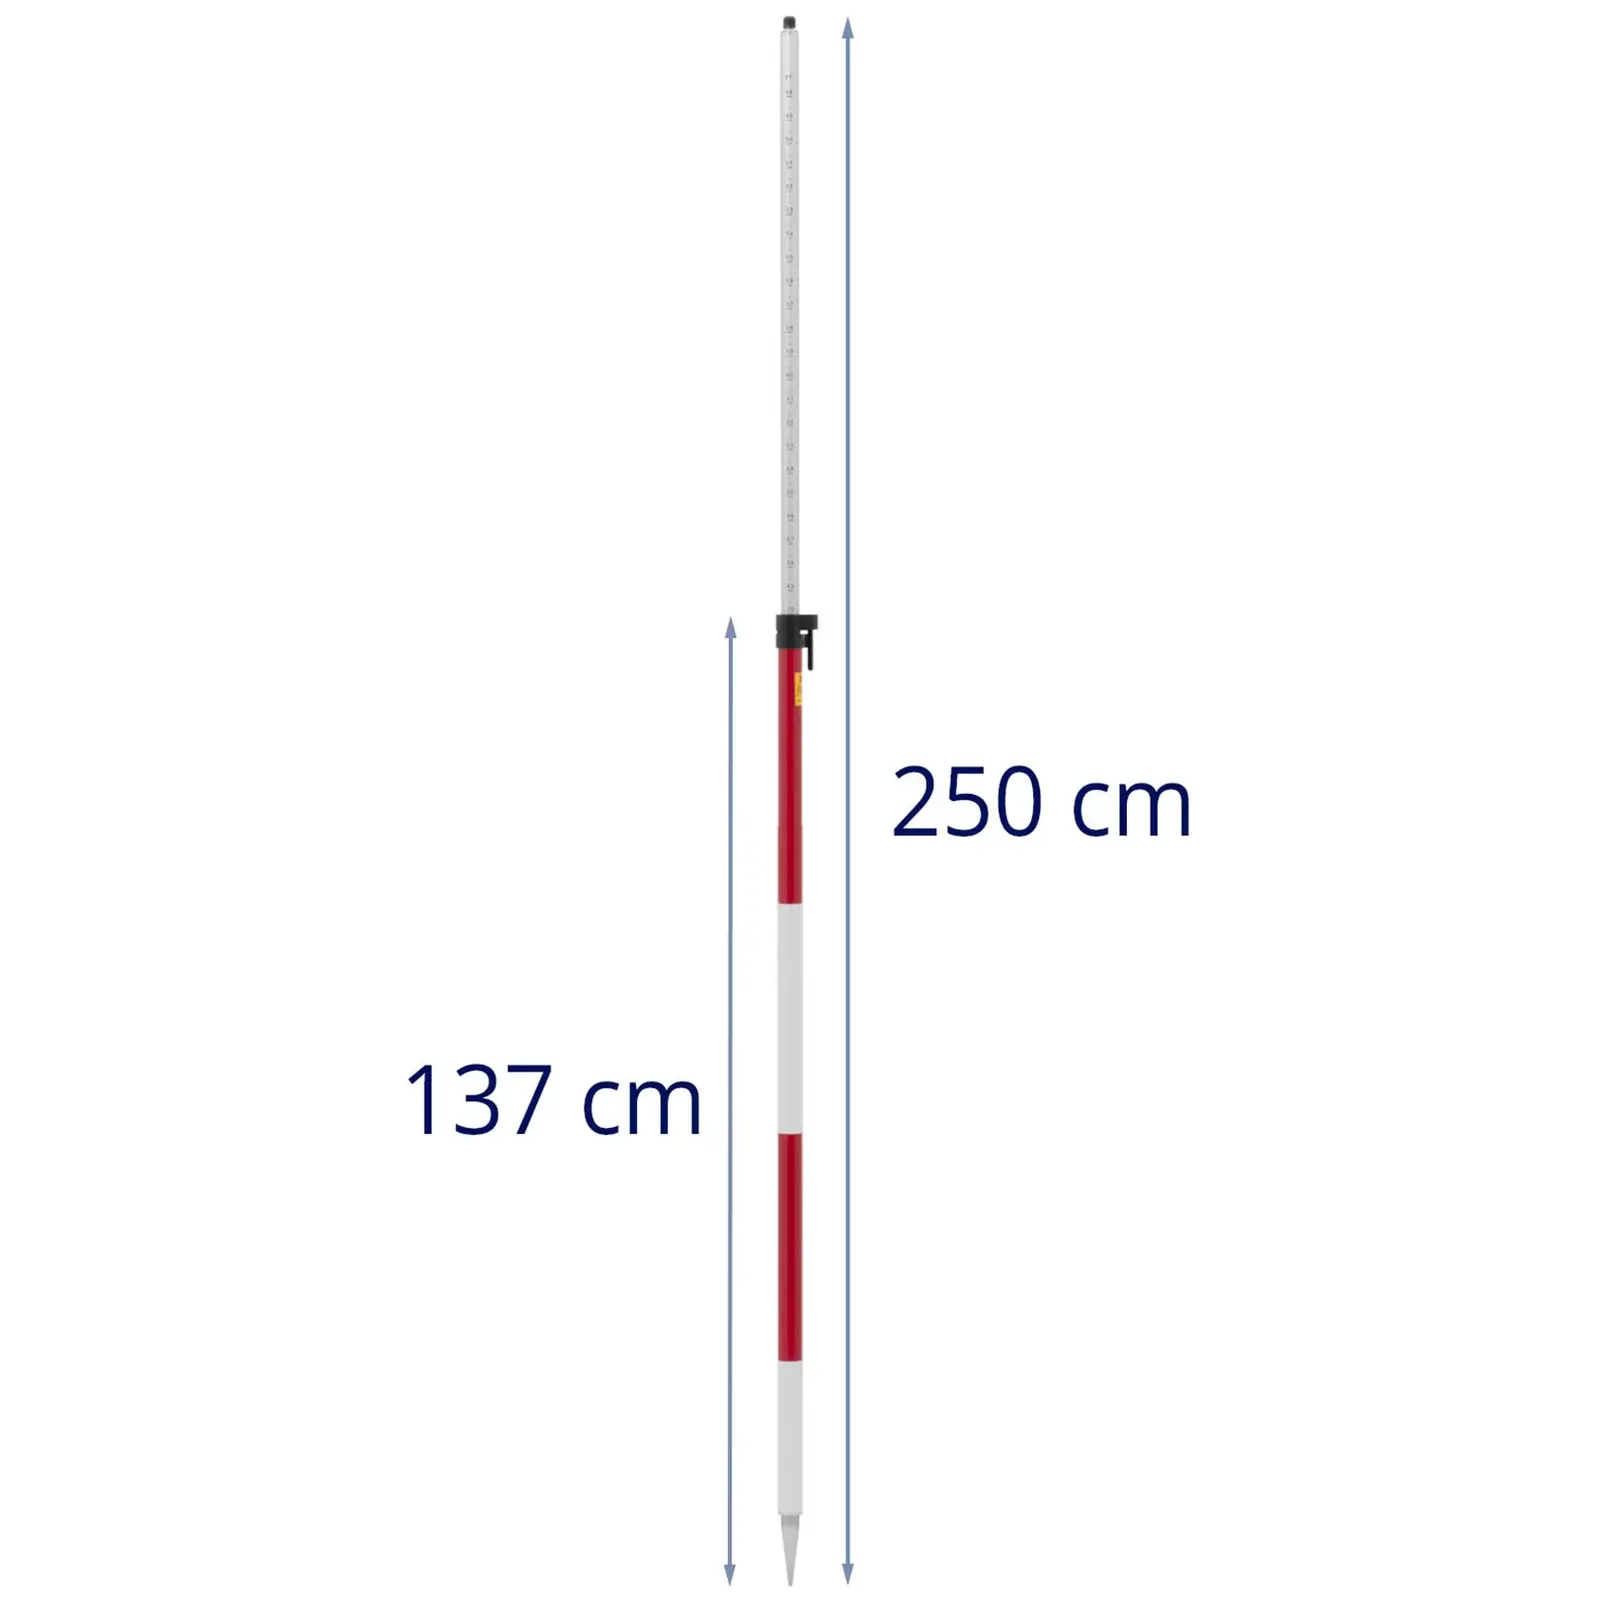 Prismestang - 2.5 m